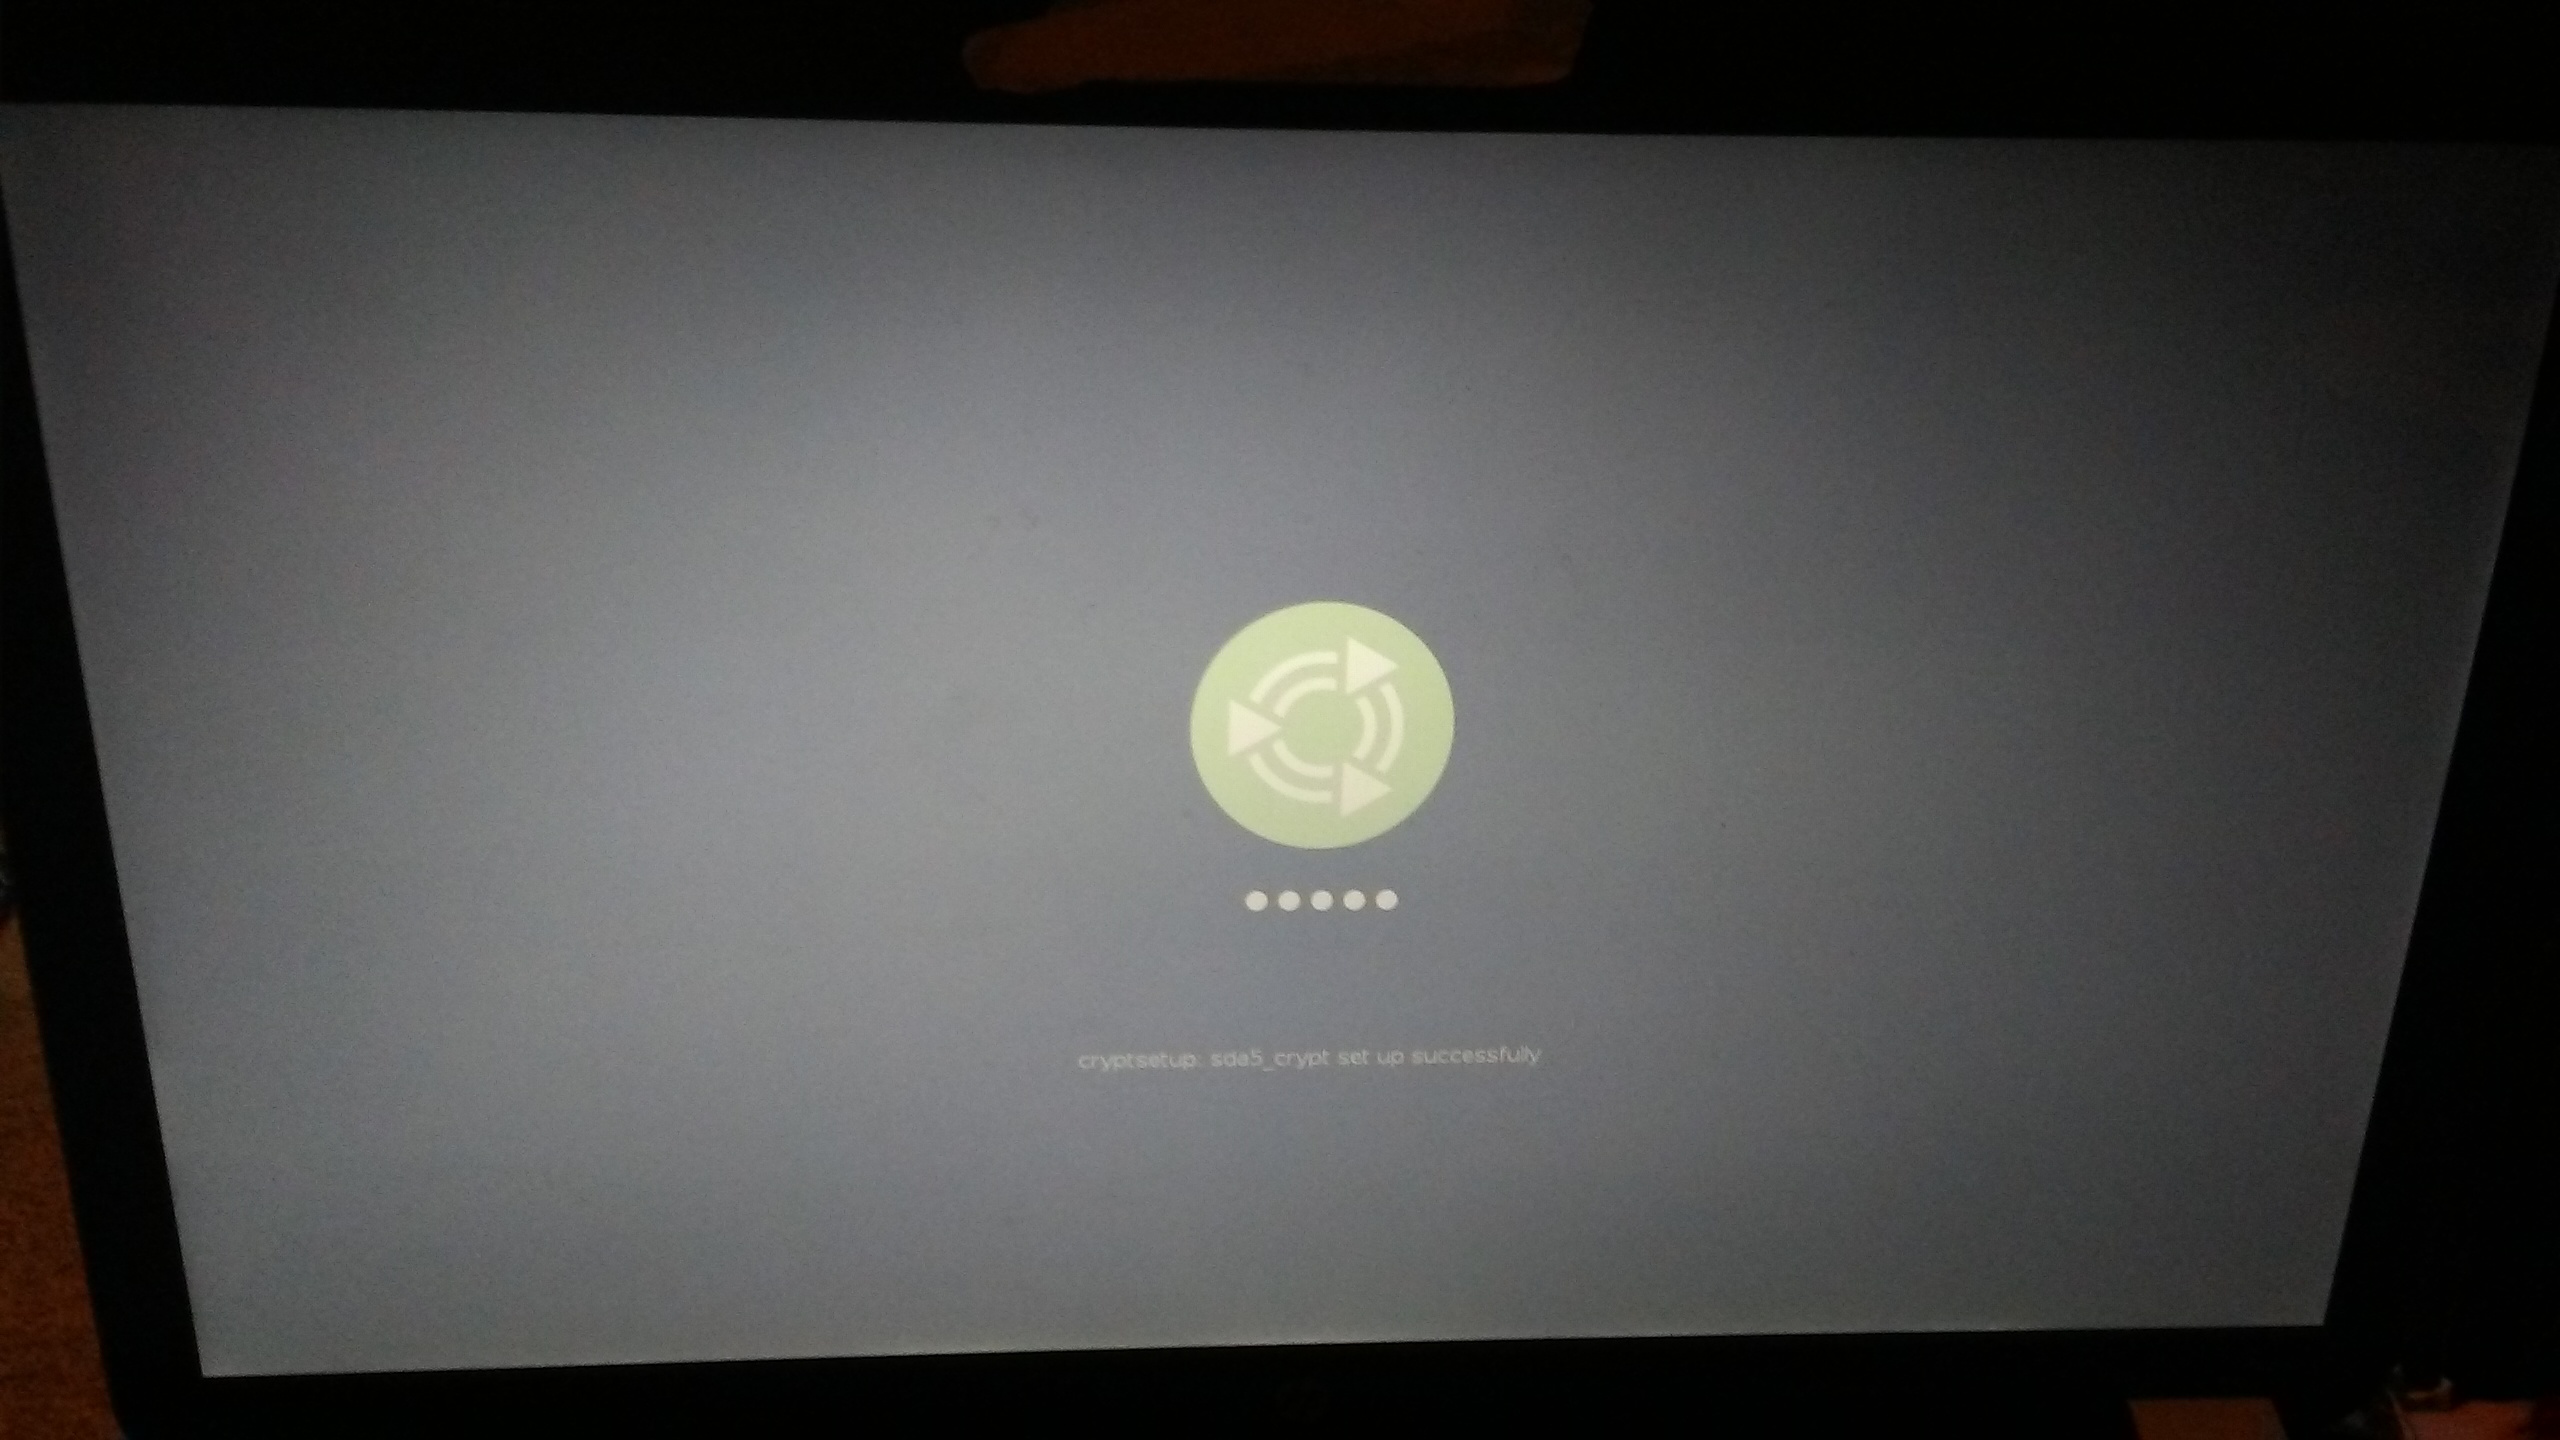 Rx черный экран. Черный экран. Черный экран фото. Microsoft Teams черный экран. Загрузилась Ubuntu в черный экран.